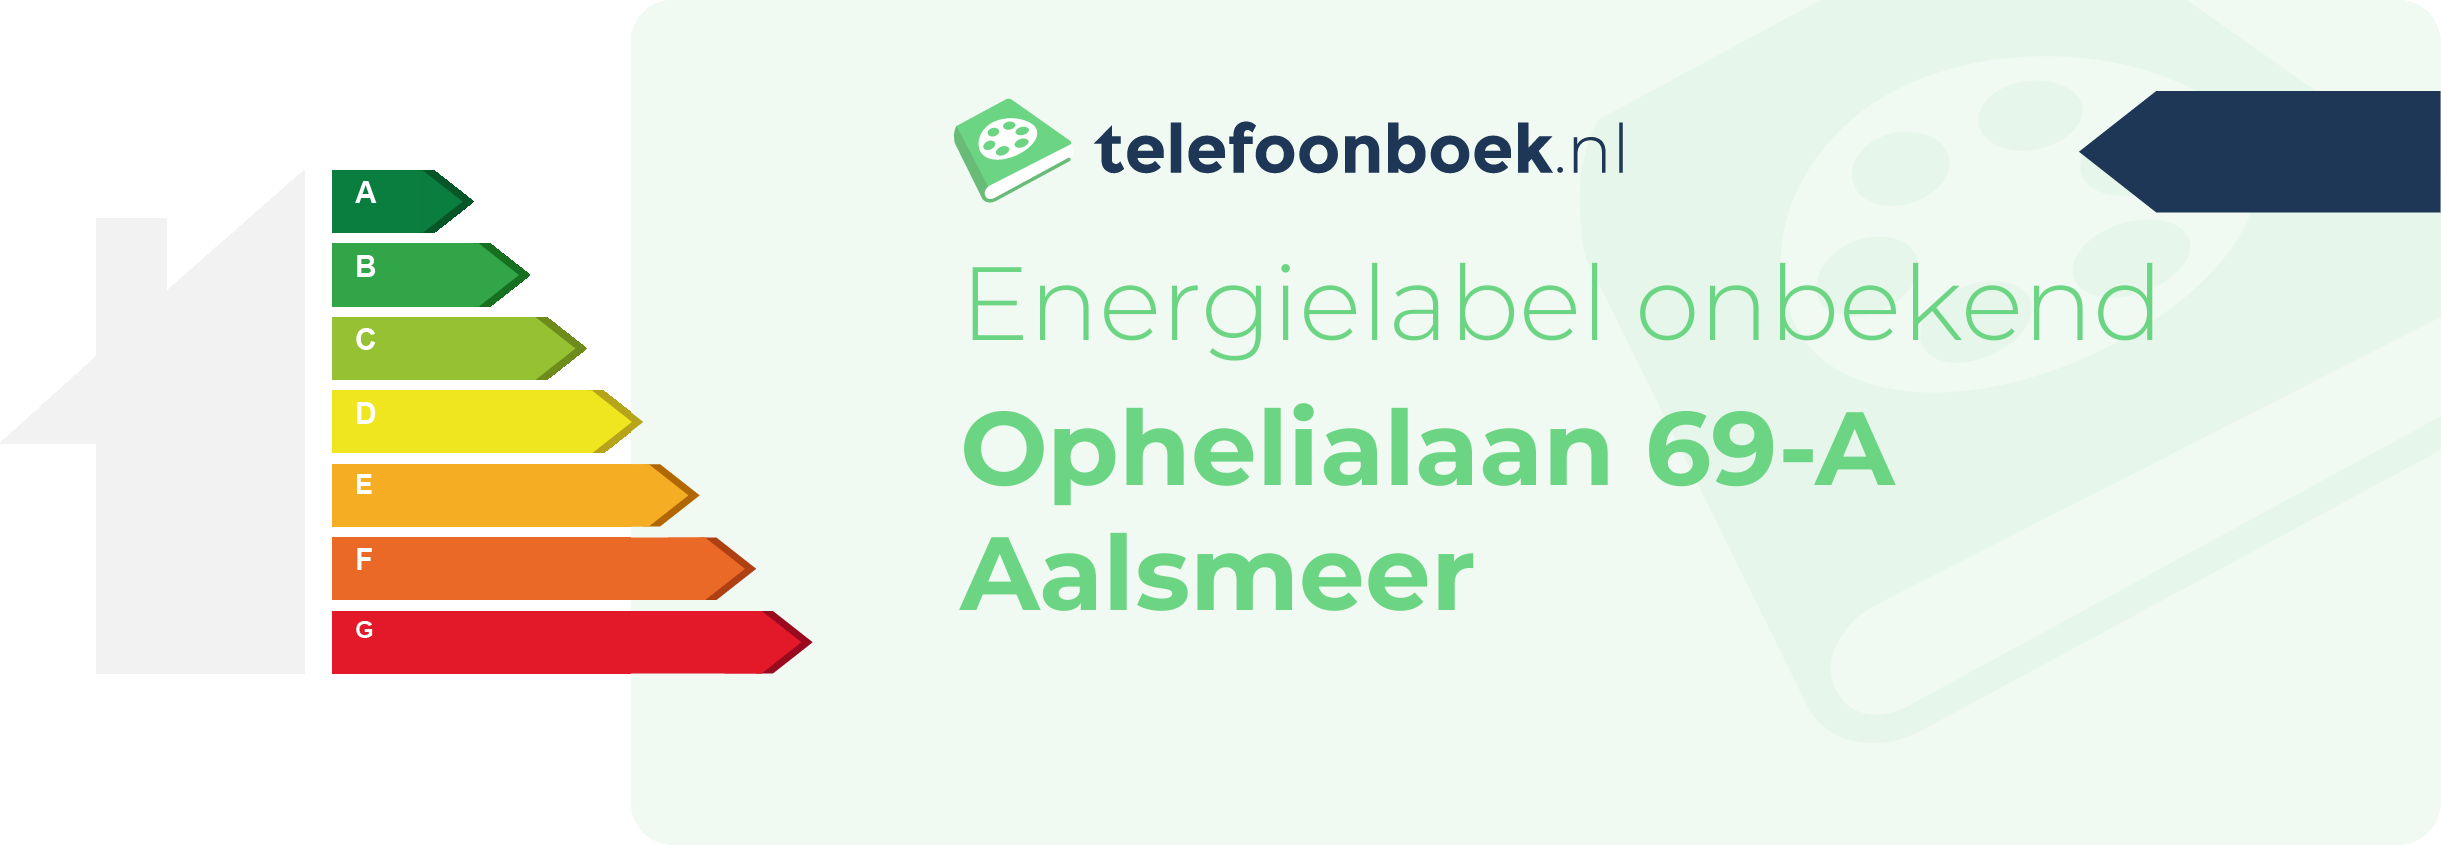 Energielabel Ophelialaan 69-A Aalsmeer